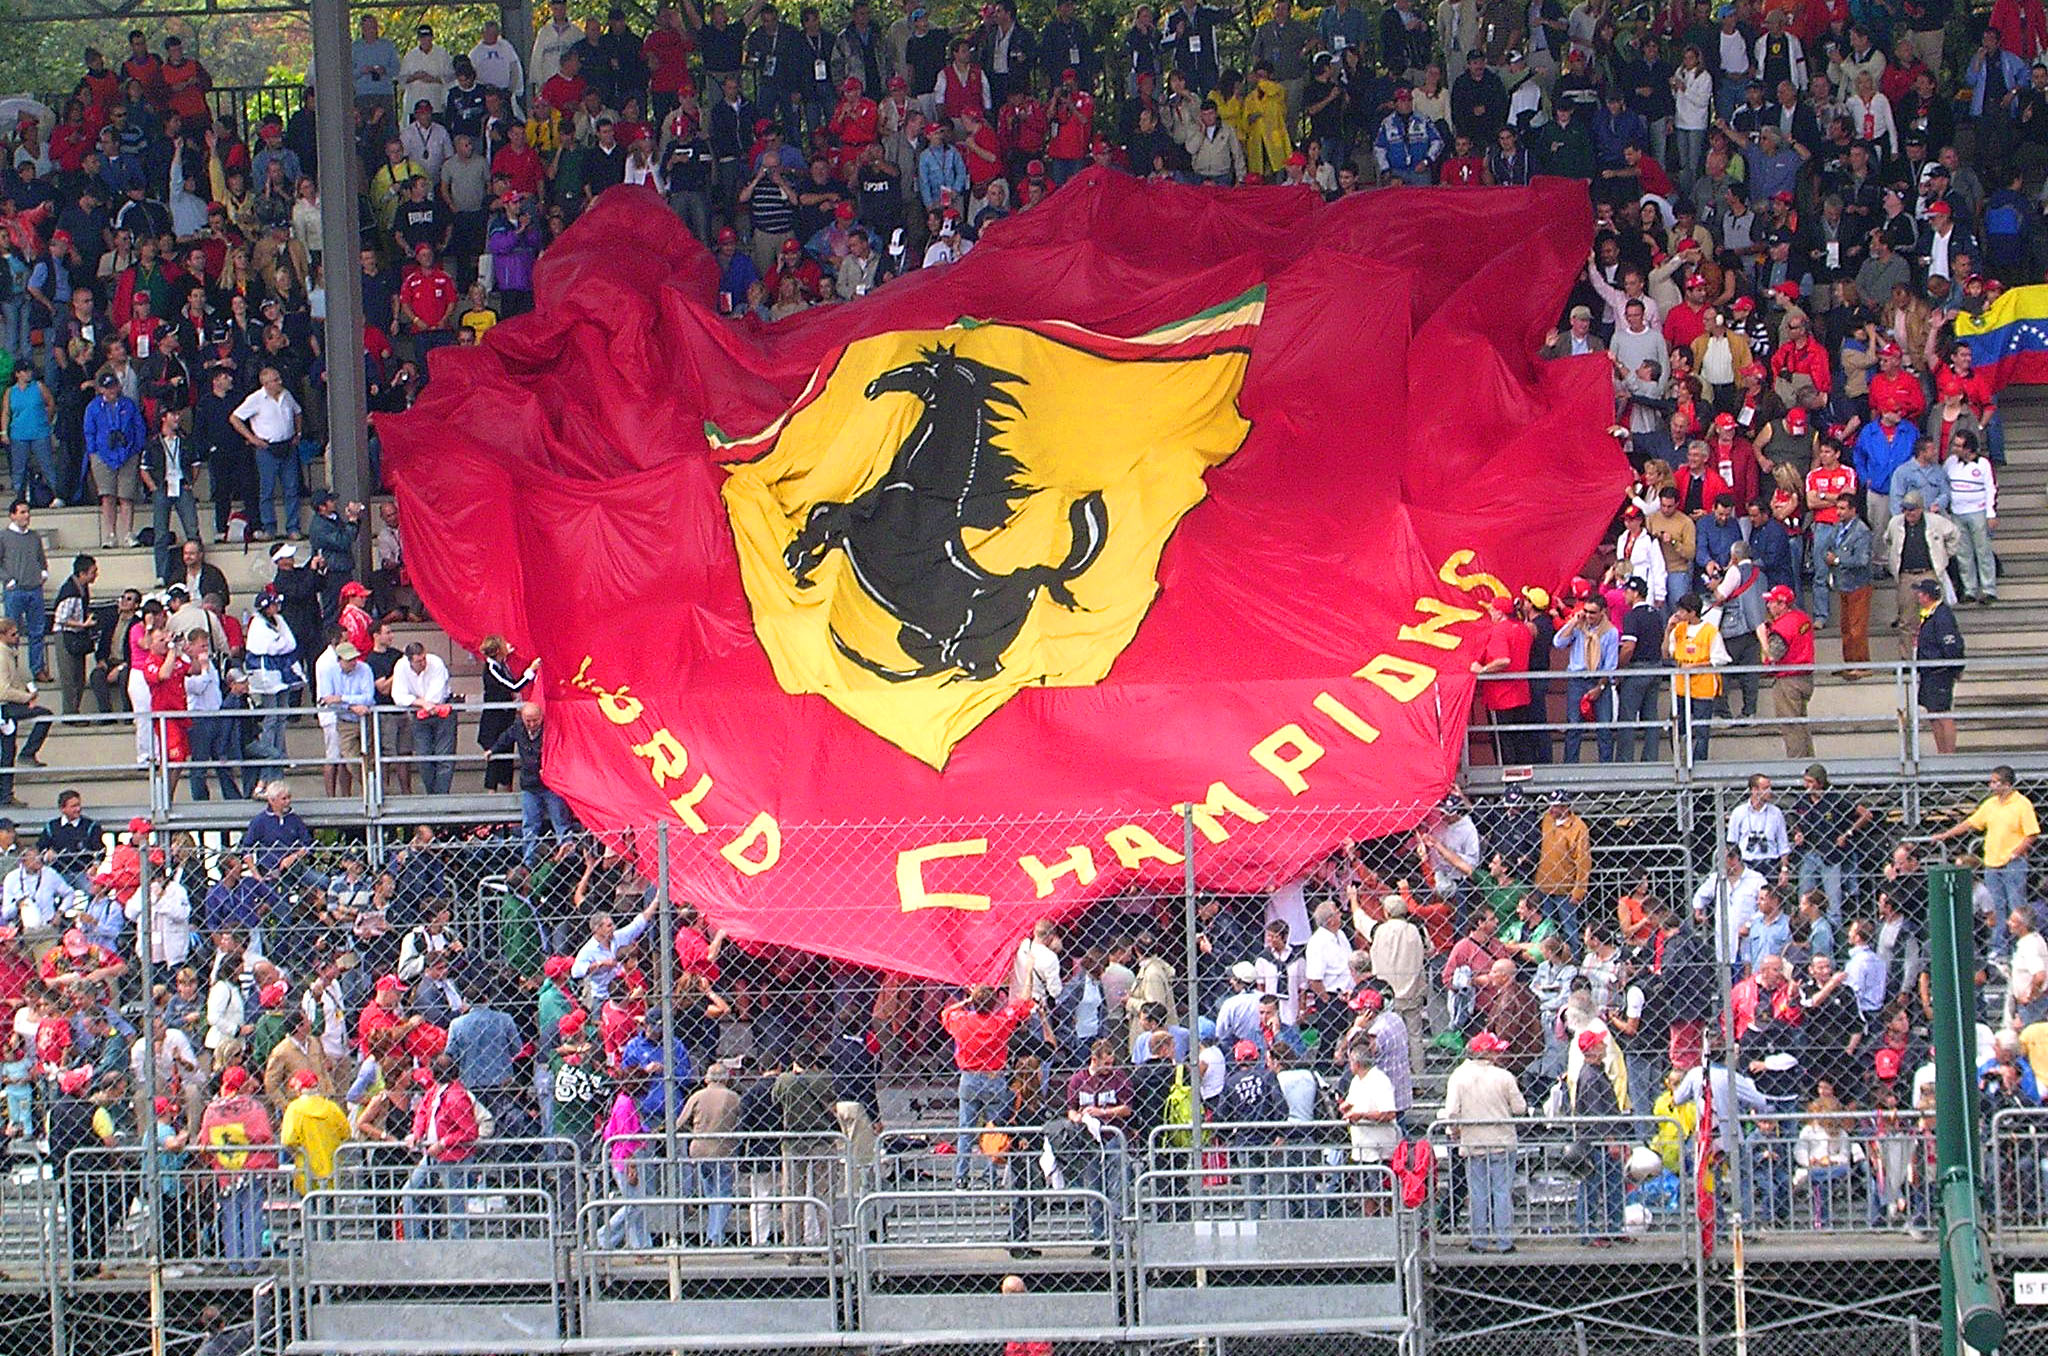 Foto do Circuito de Formula 1 da Itália, Monza - foto By Fabio Alessandro Locati
, Wikipaedia